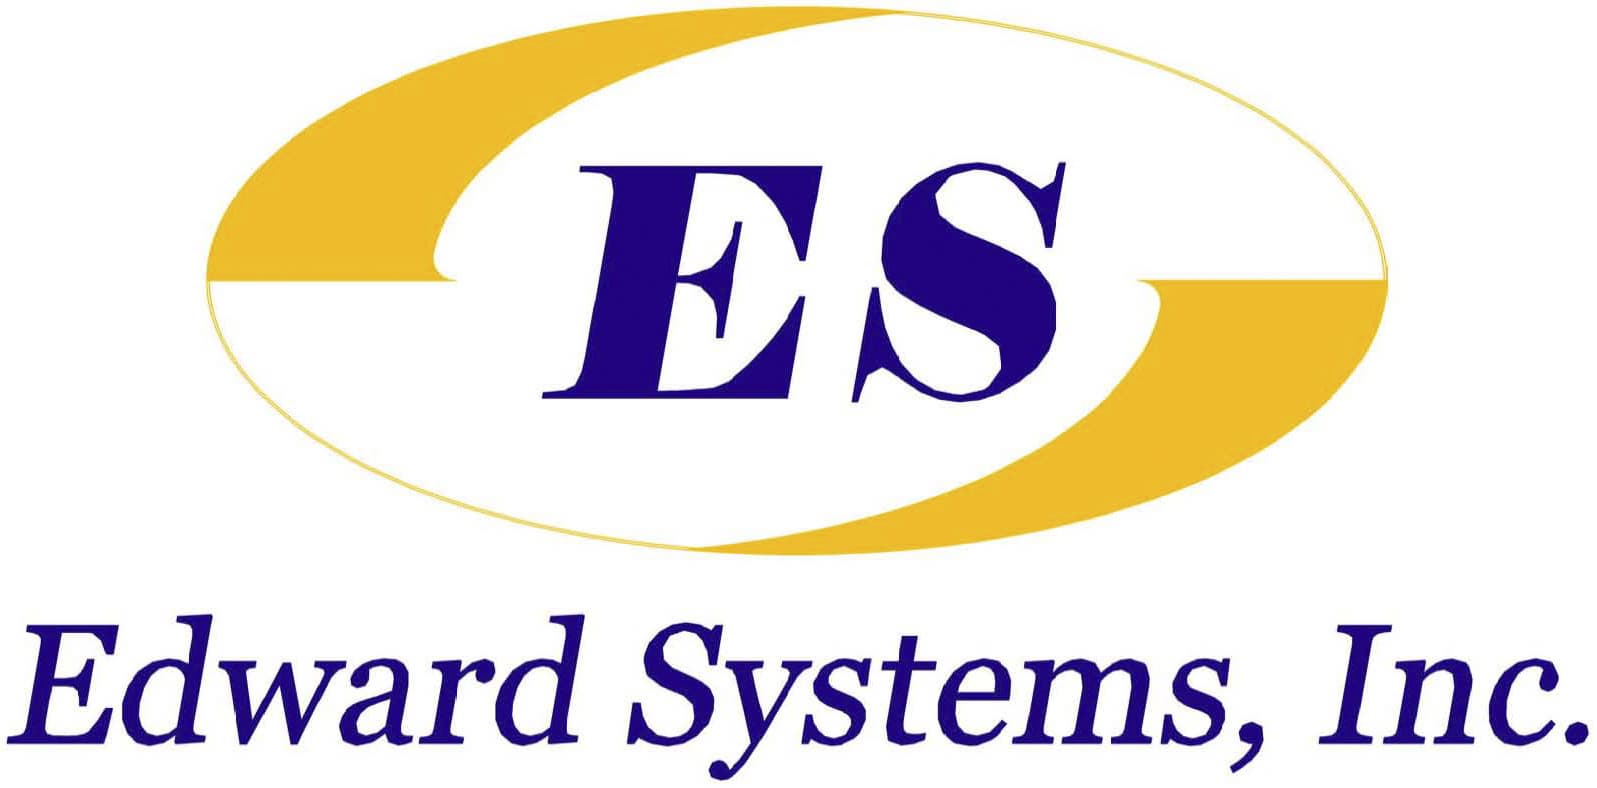 Edward Systems, Inc.